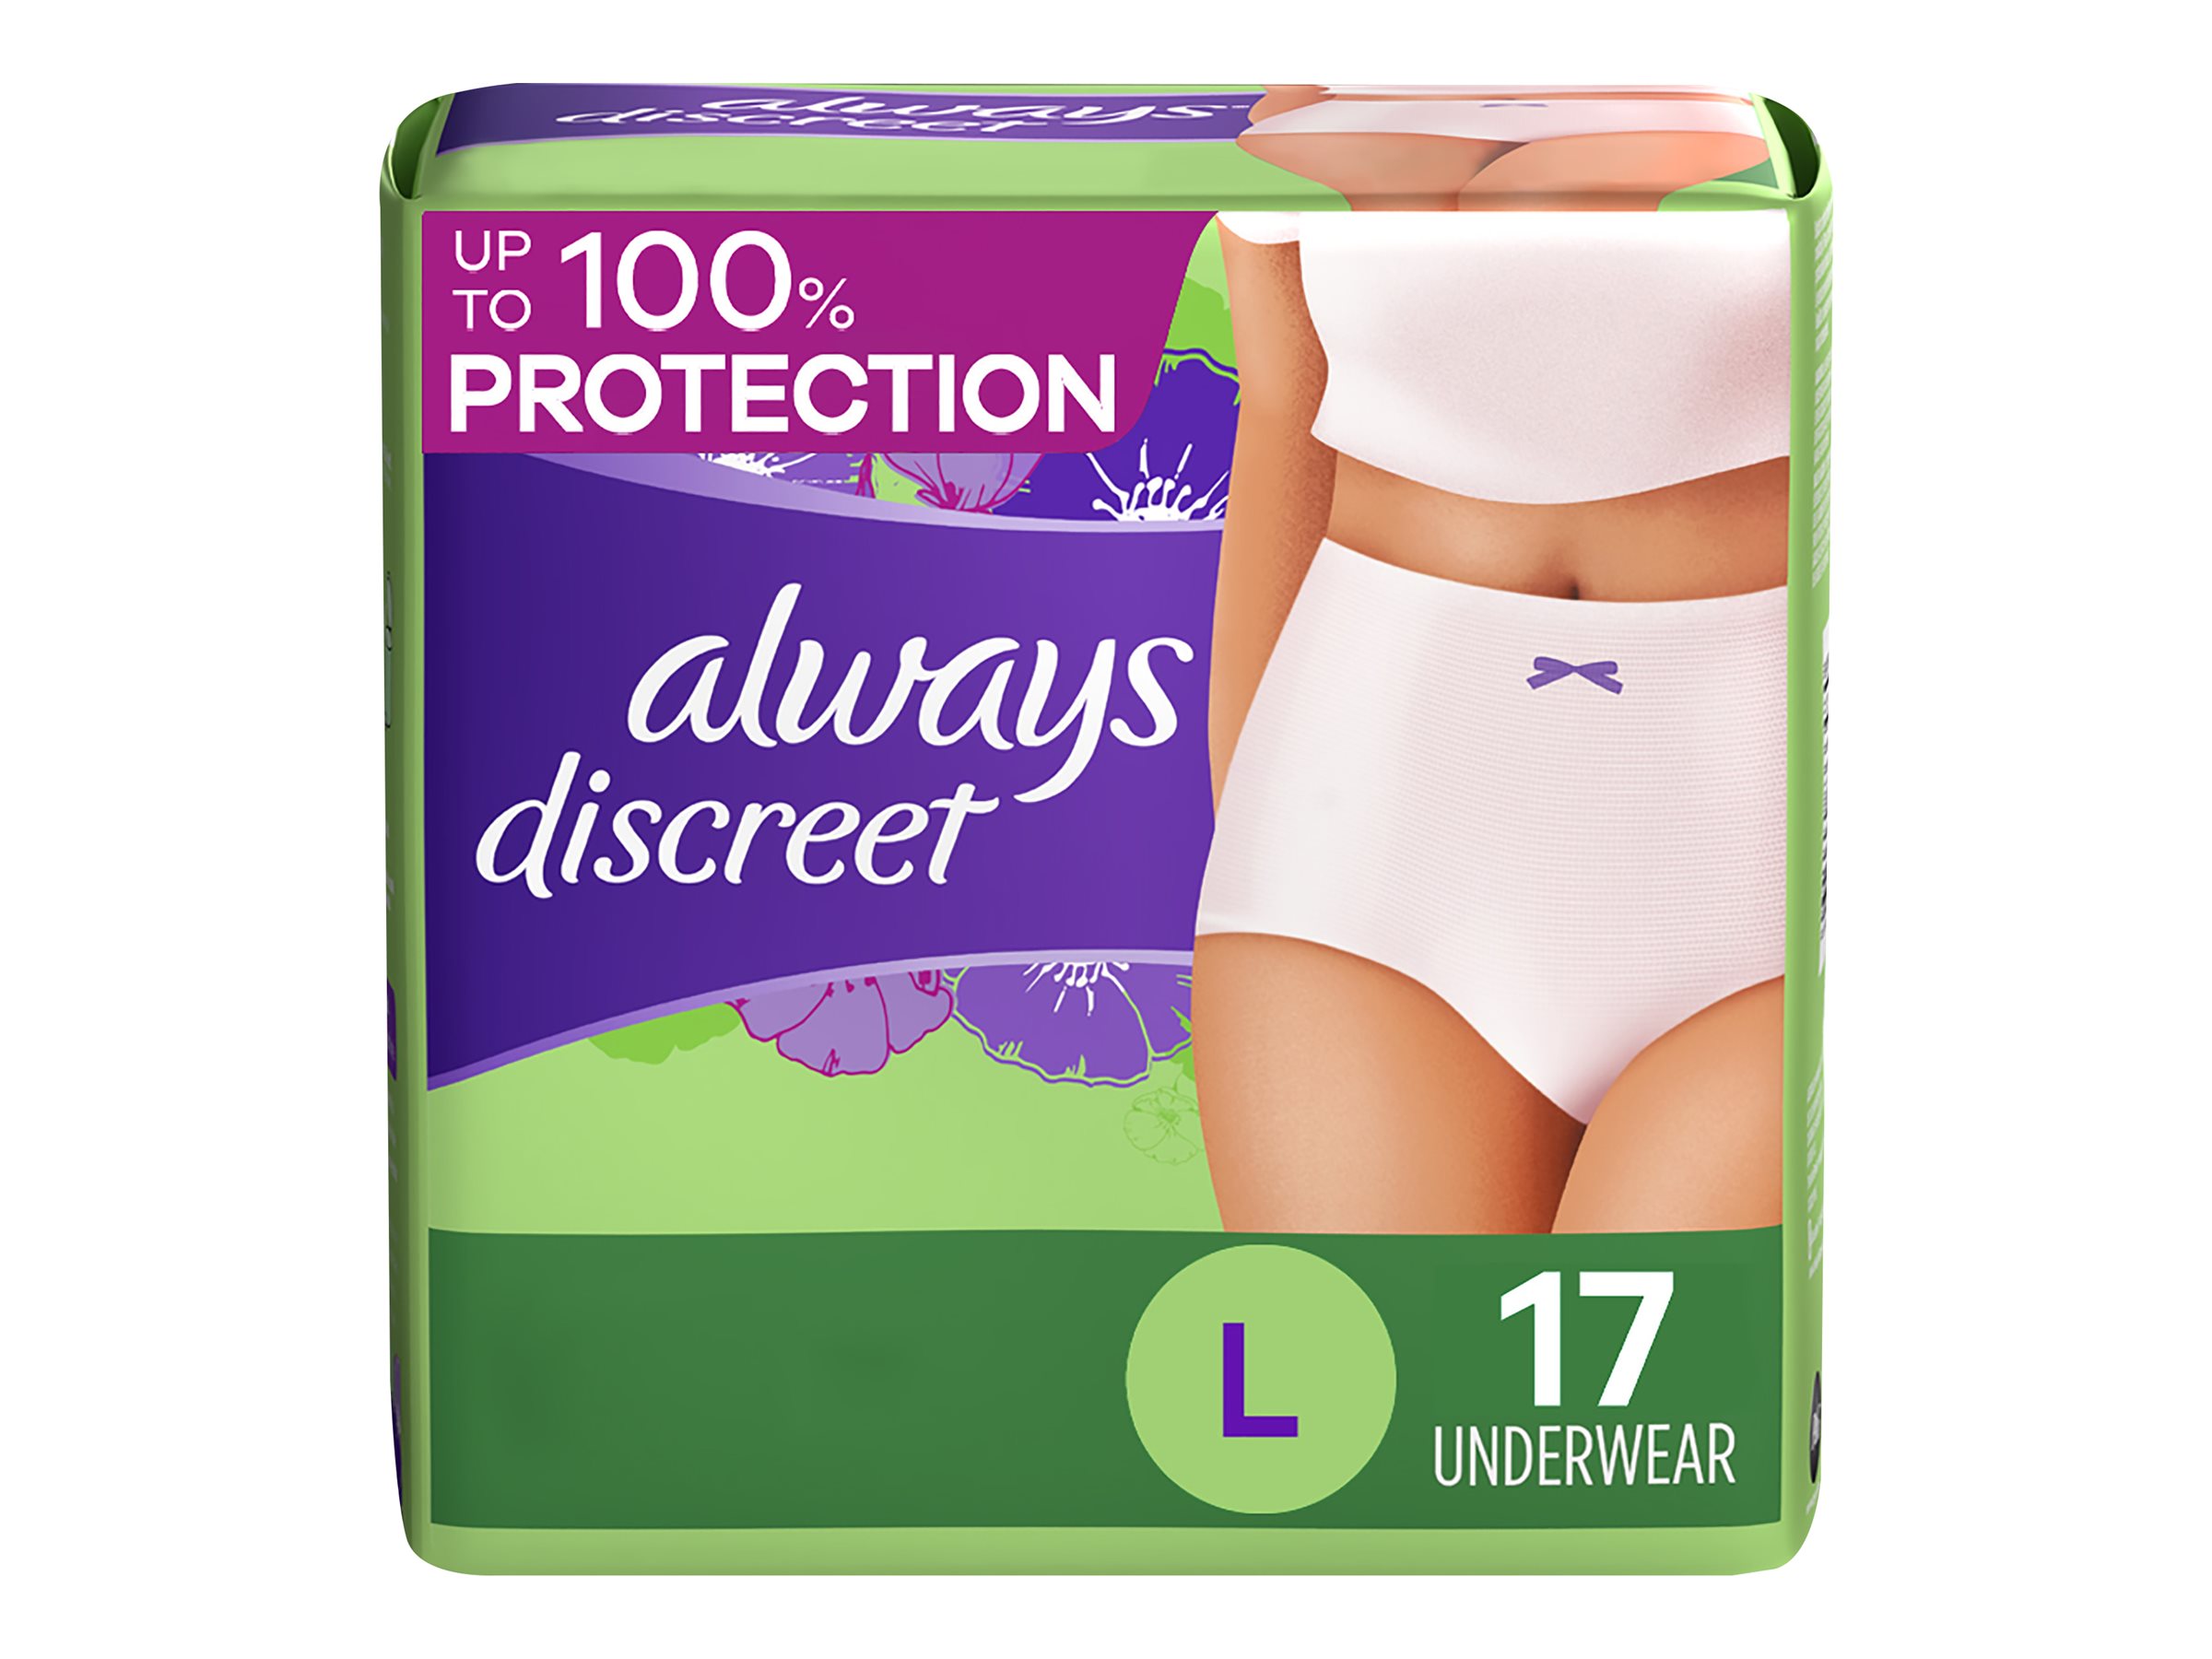 Always Period underwear or Always Discreet underwear HD 